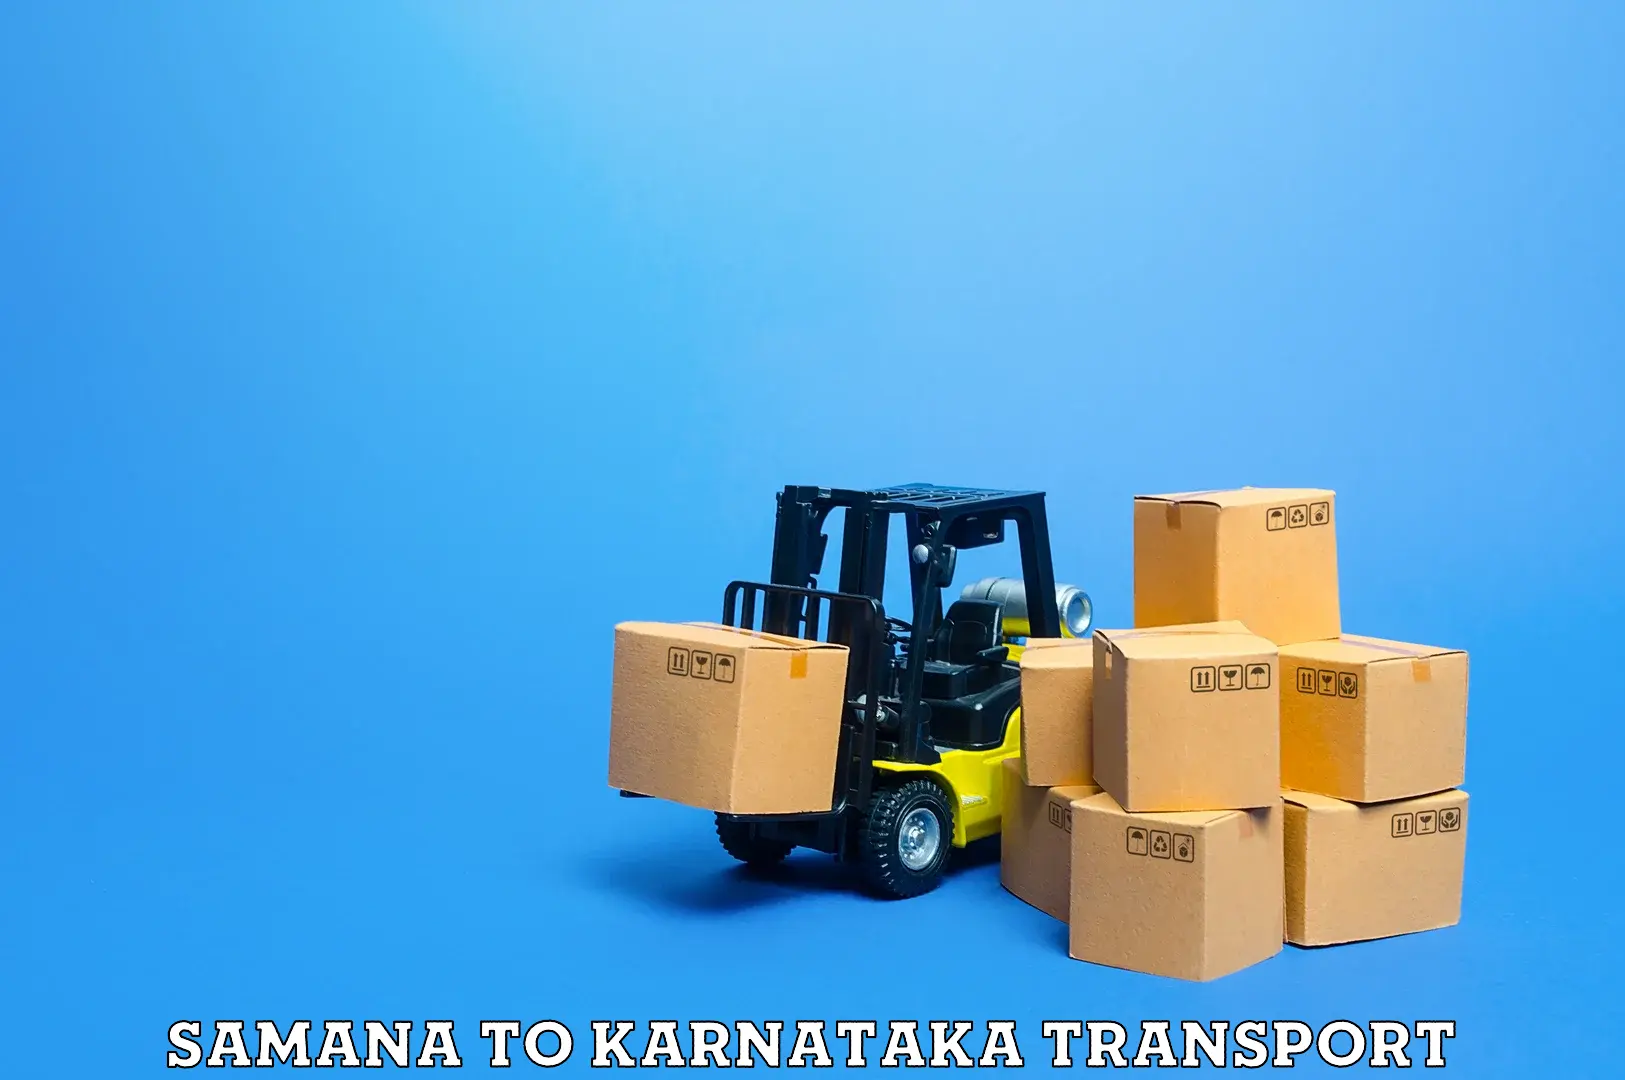 Delivery service Samana to Kolar